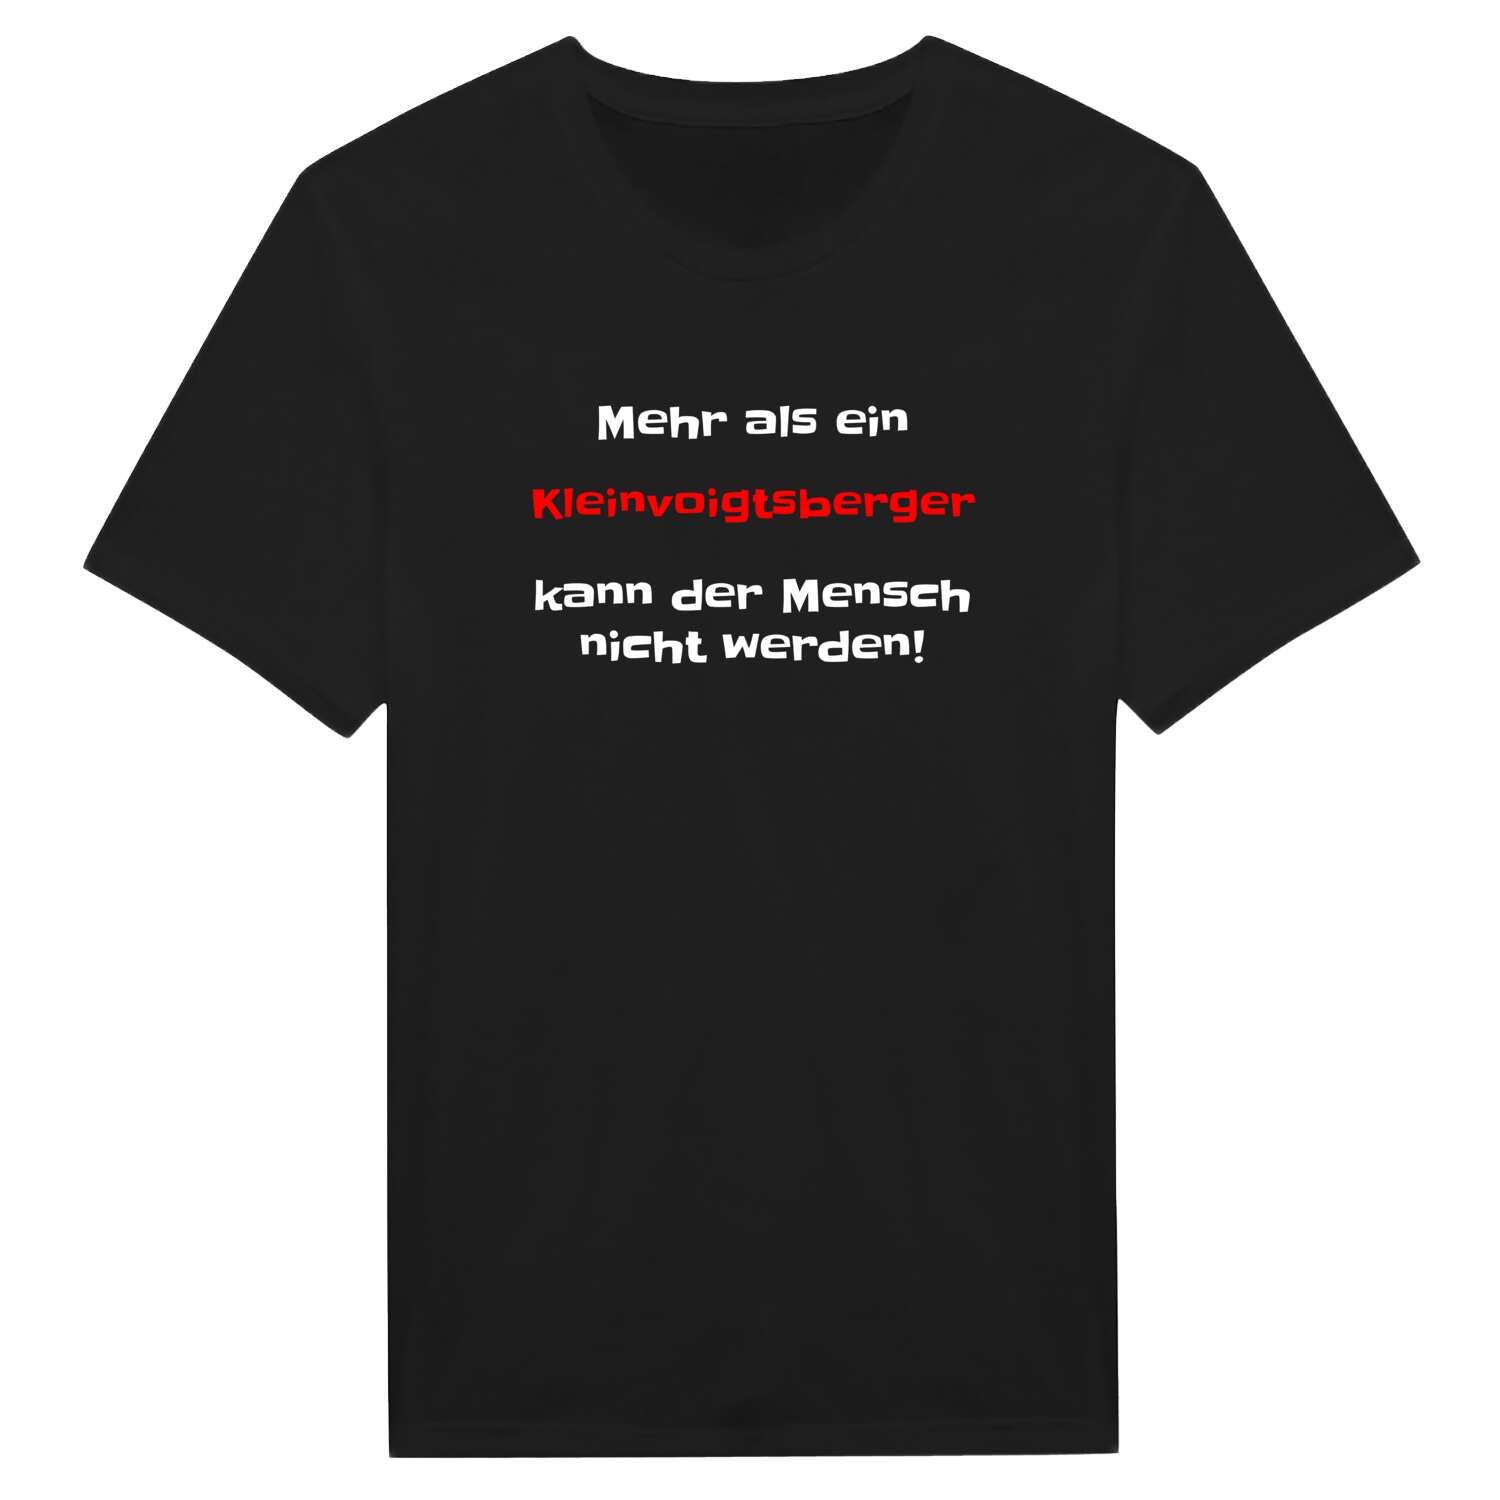 Kleinvoigtsberg T-Shirt »Mehr als ein«